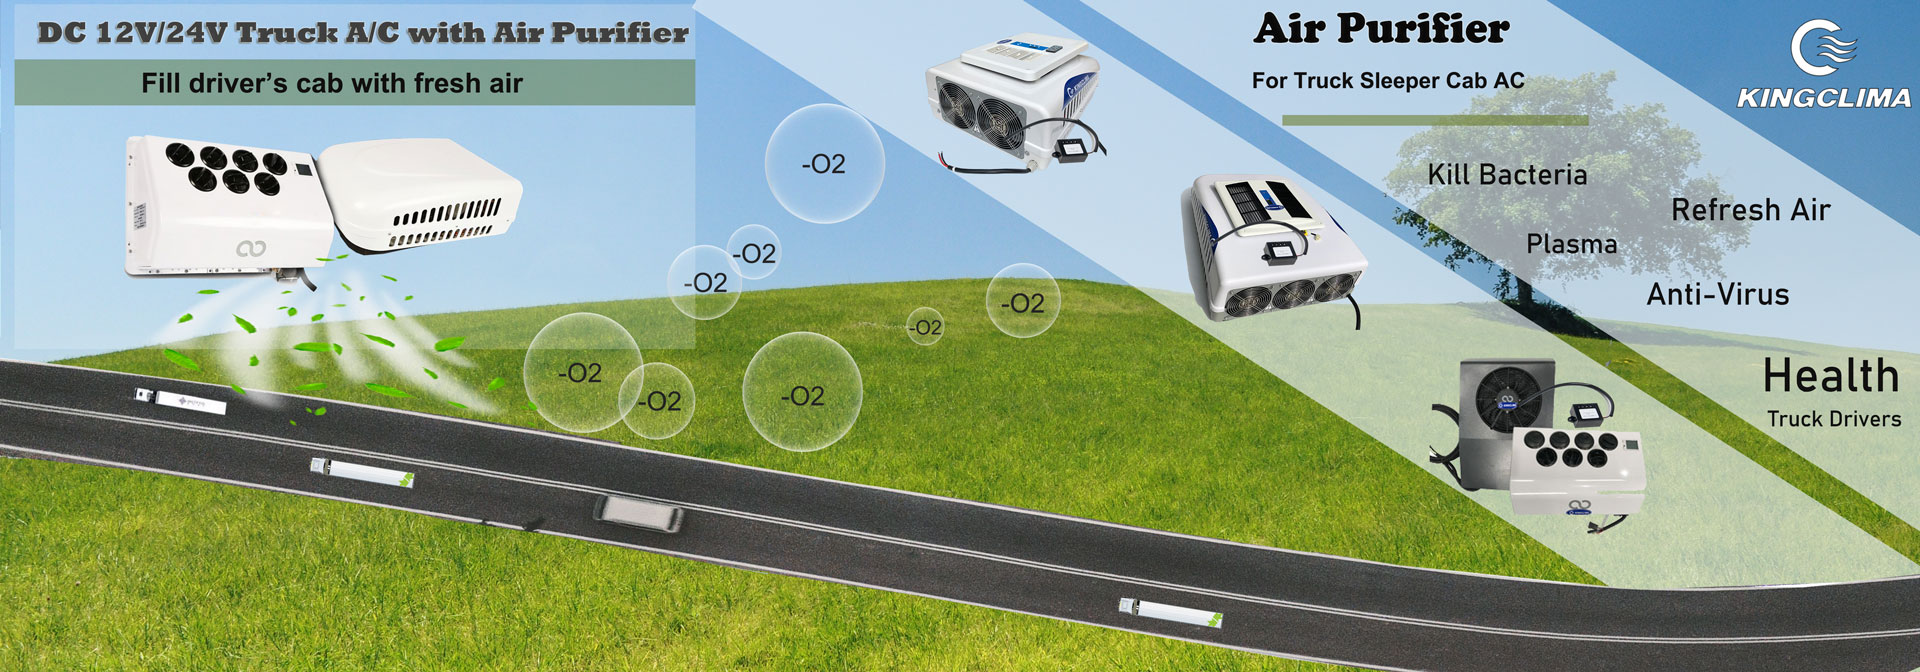 air purifier for truck sleeper cab ac 